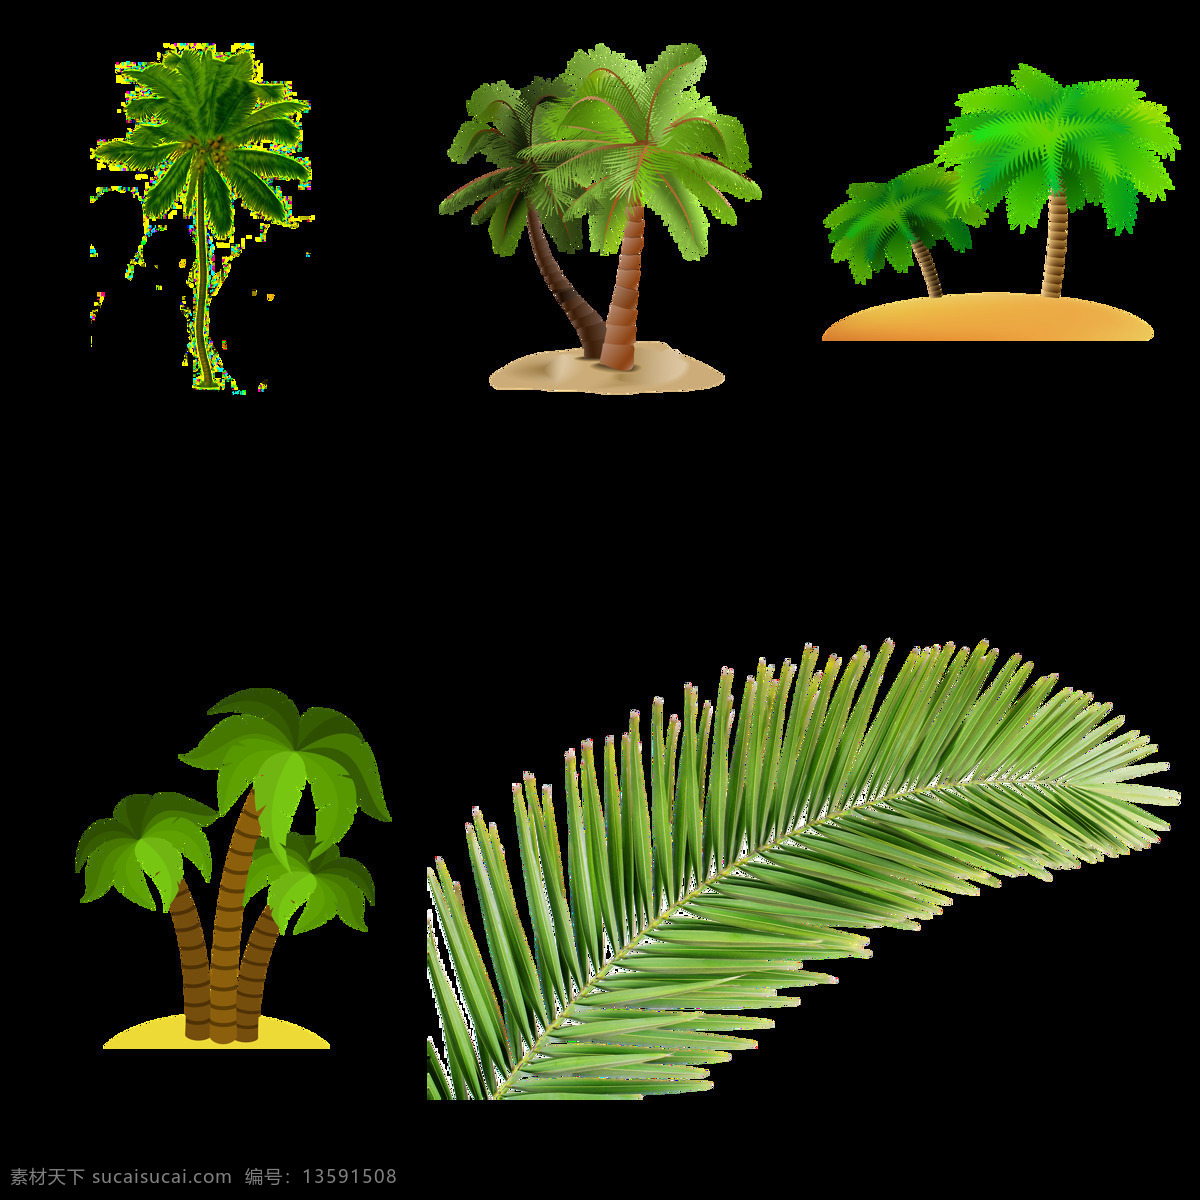 棕桐树 热带植物 夏季叶子 叶子 棕榈树 水彩树叶 芭蕉叶 卡通设计